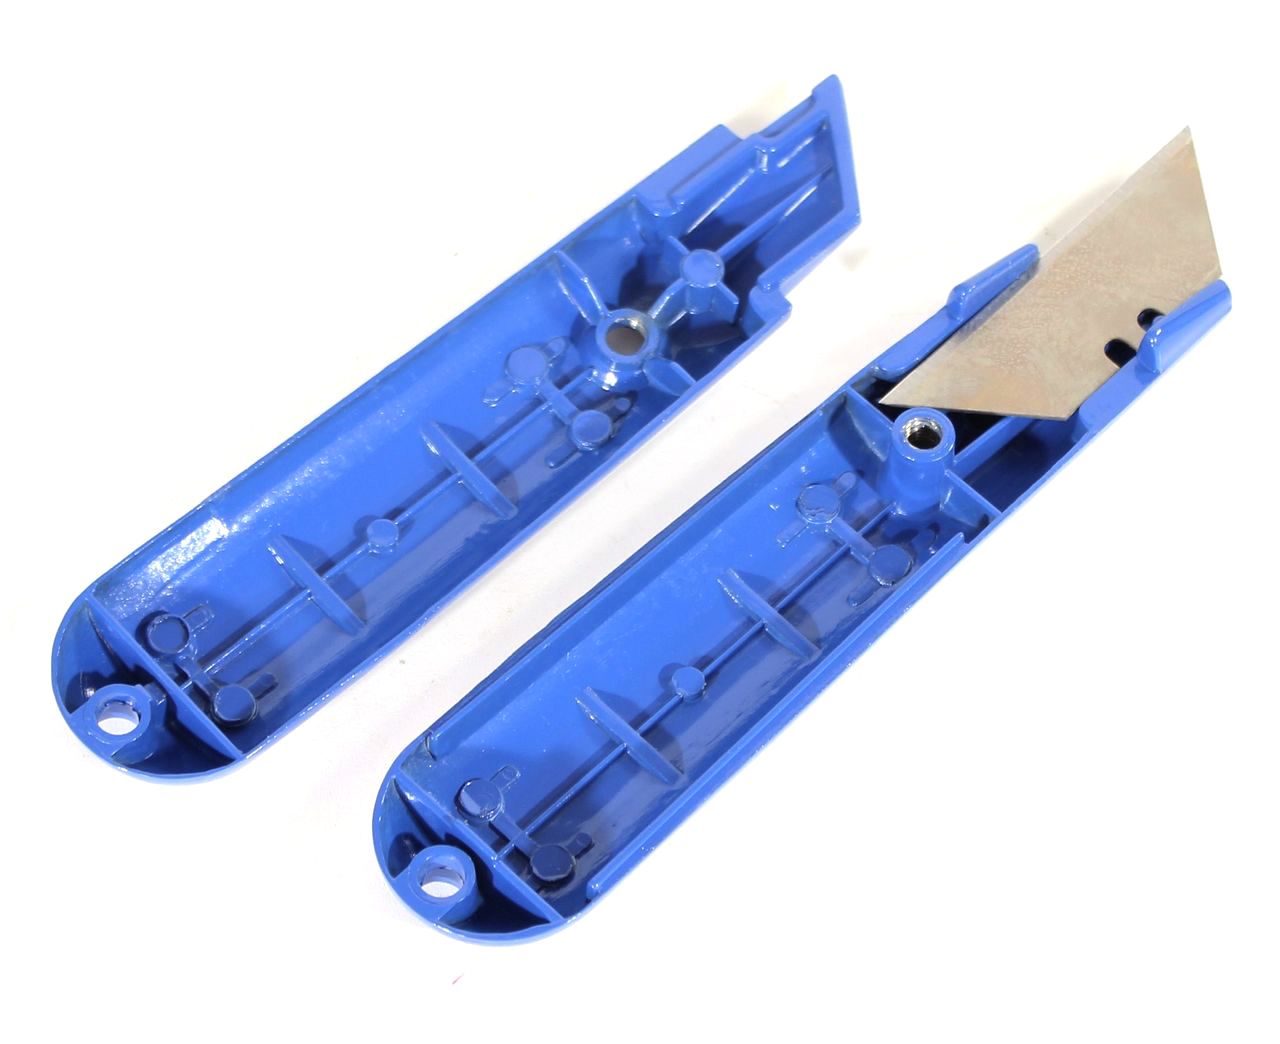 2 x Teppichmesser Cuttermesser aus Zinkguss Messer Klinge Profi Cutter Paket